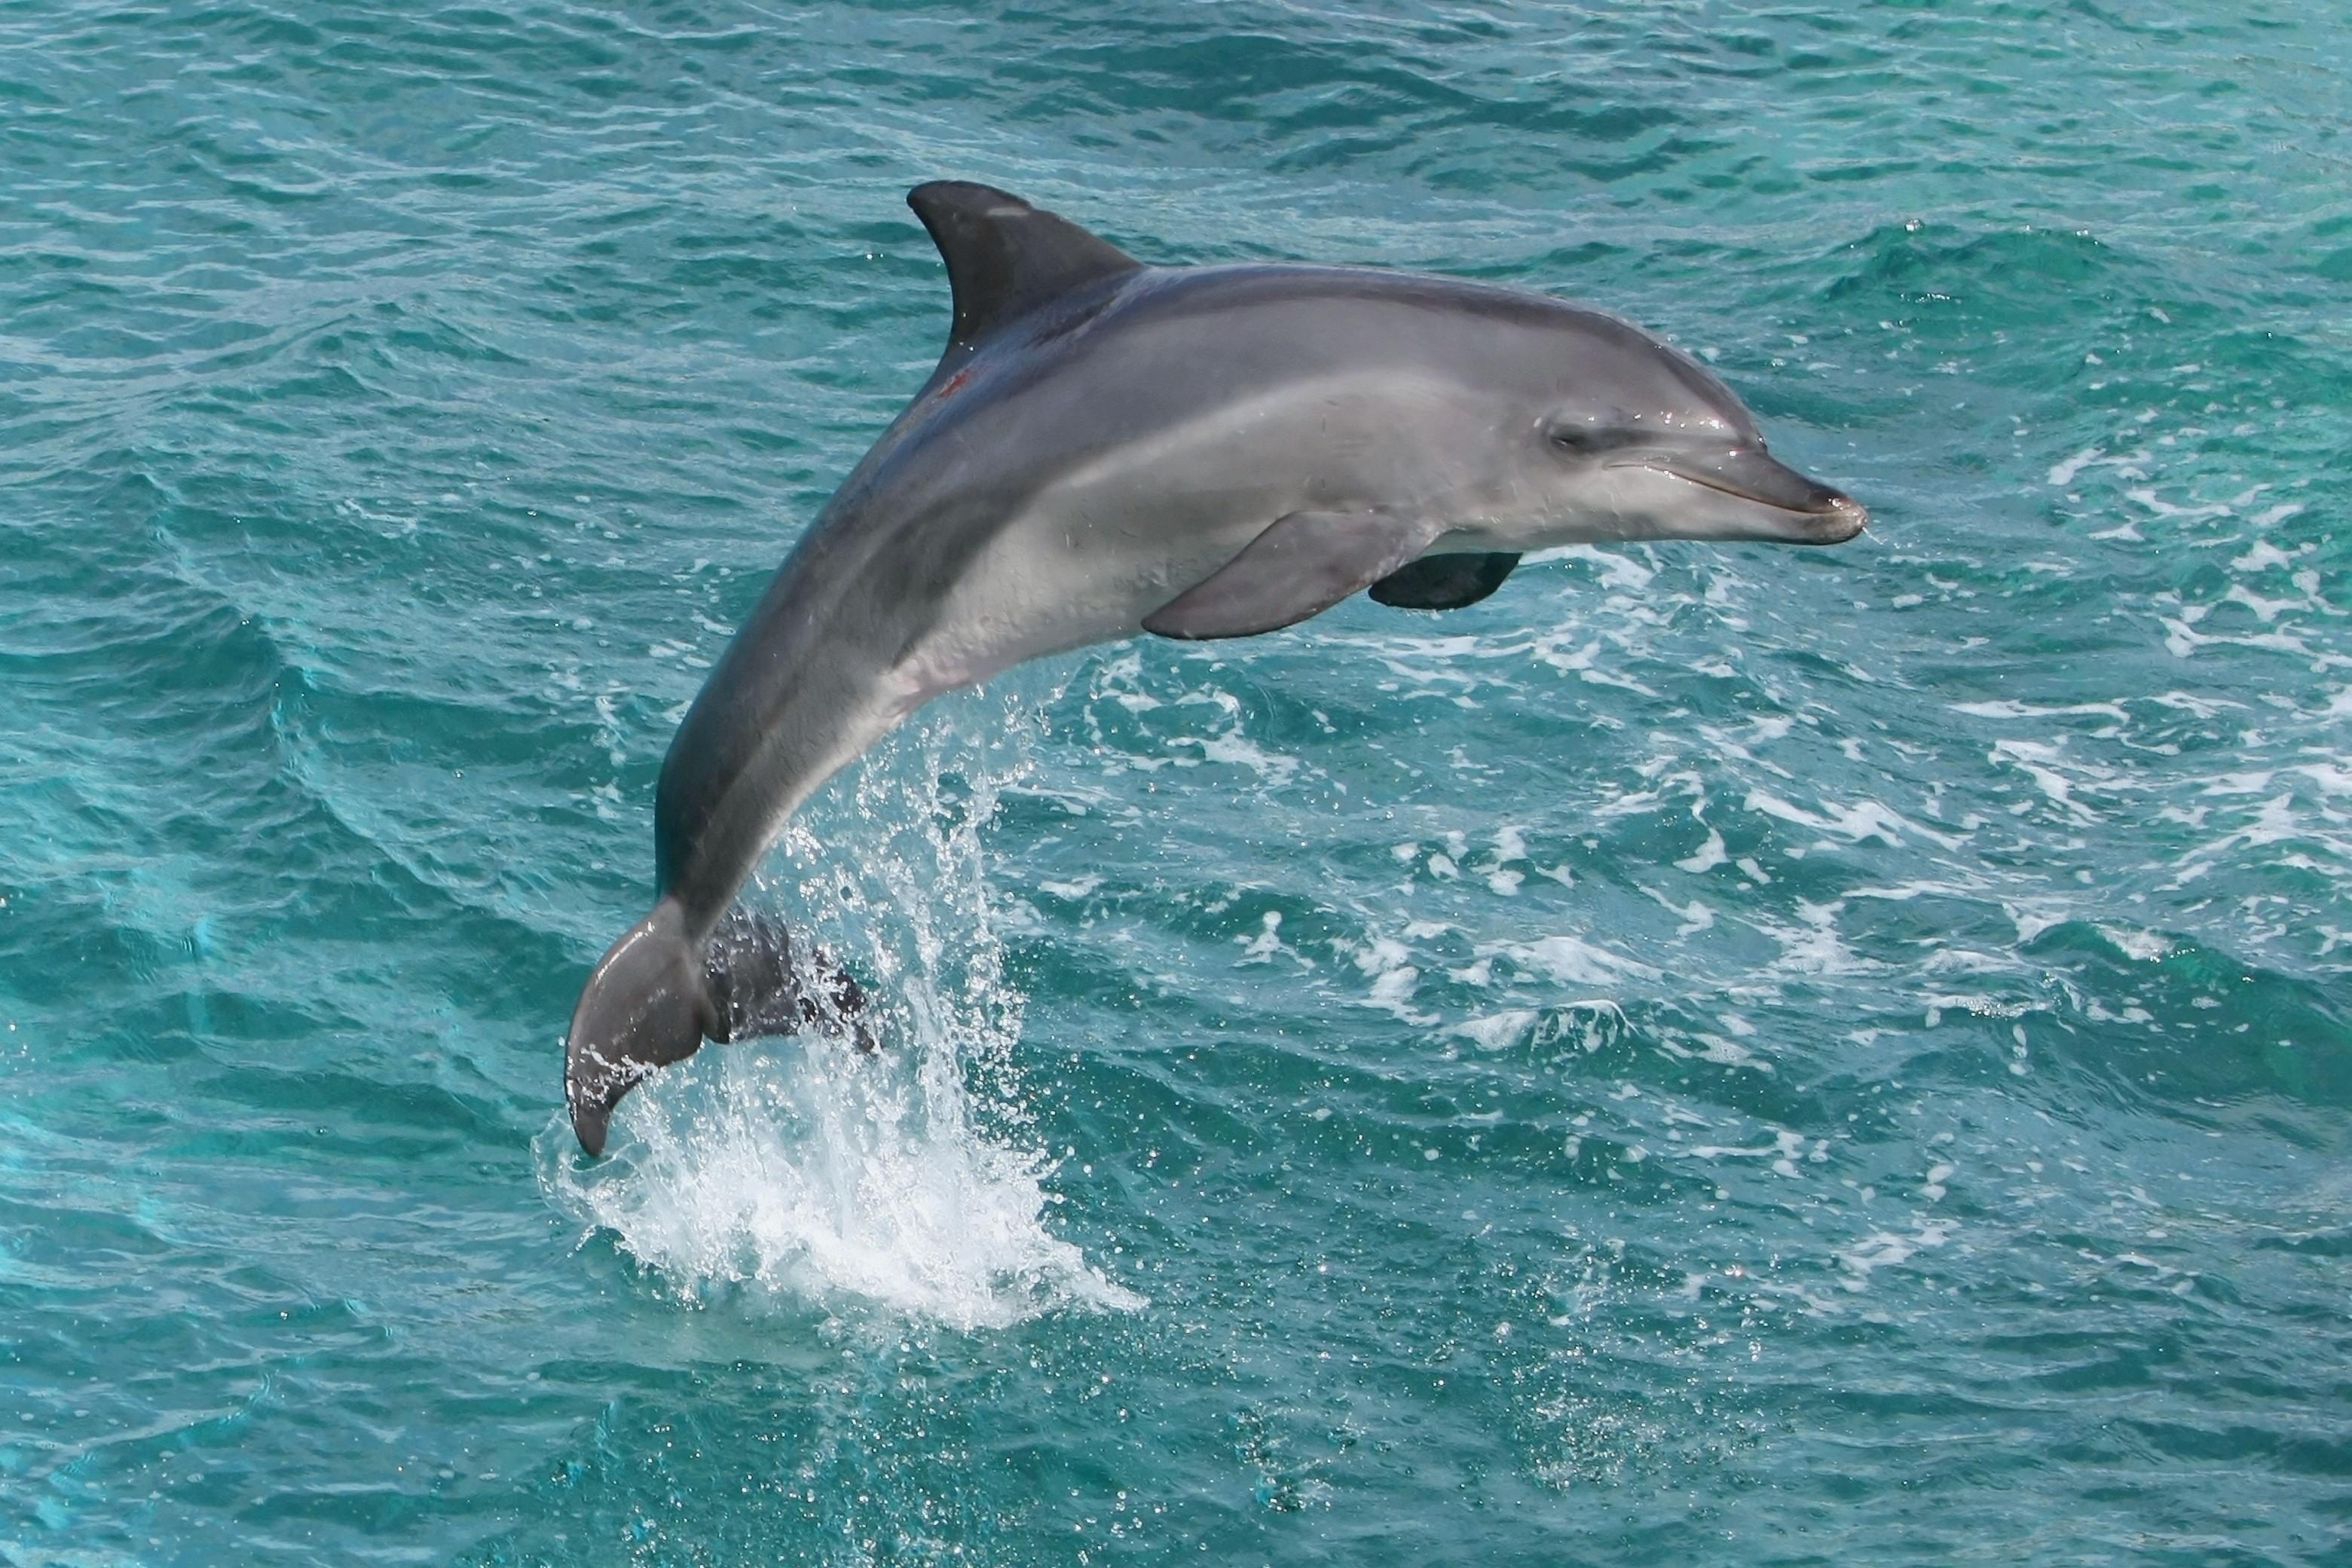 descarga gratuita de fondos de pantalla de delfines,delfín nariz de botella común,delfín común de pico corto,delfín,delfín nariz de botella,mamífero marino